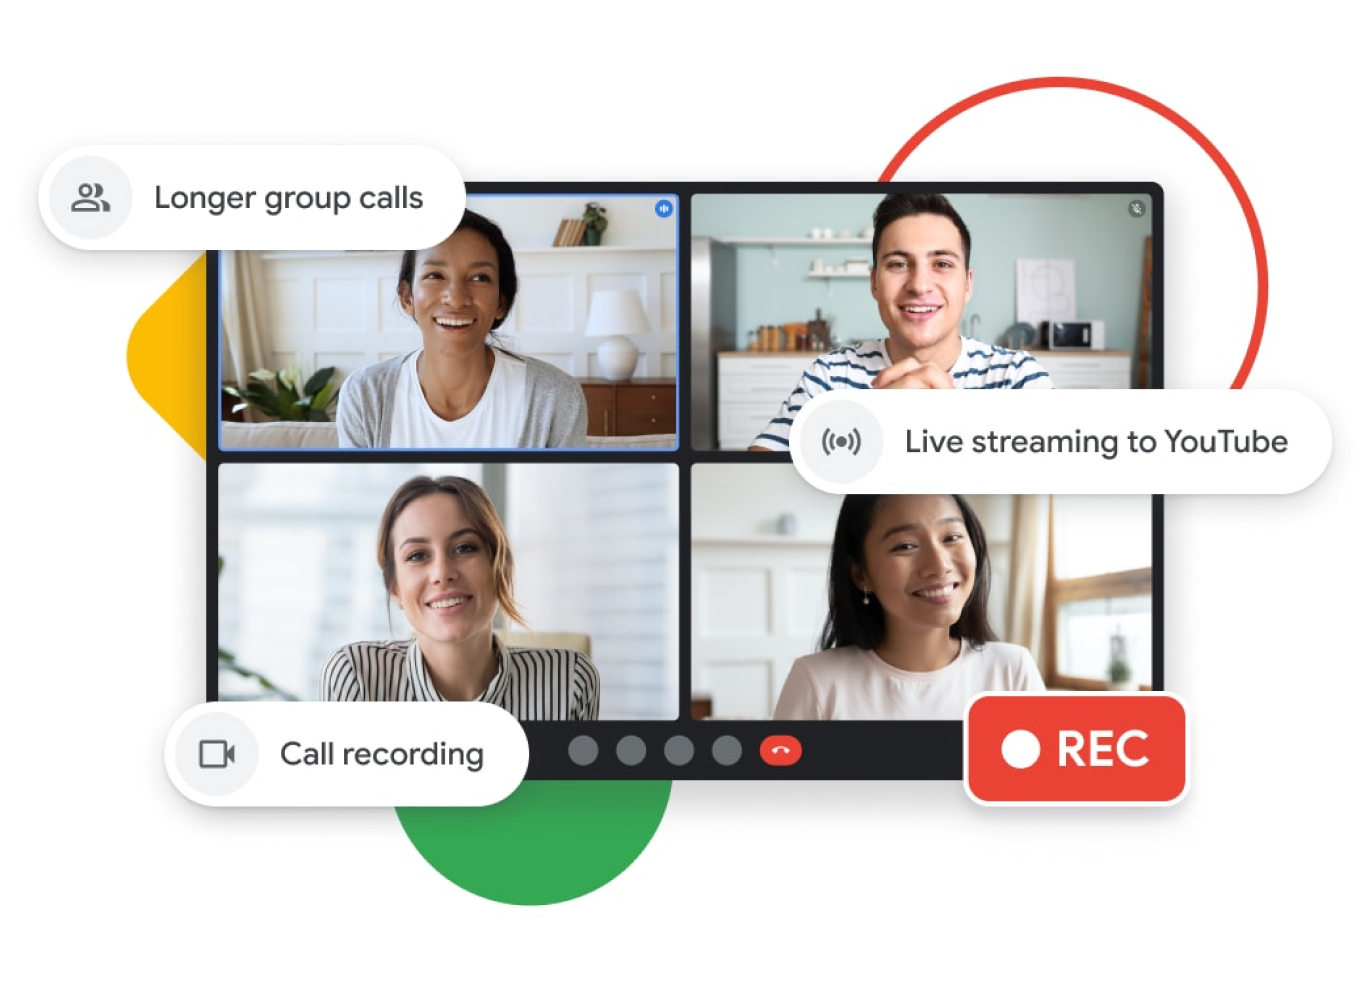 Abbildung der Benutzeroberfläche bei einem Google Meet-Anruf mit längeren Gruppenanrufen, Livestreaming auf YouTube und Funktionen zur Anrufaufzeichnung